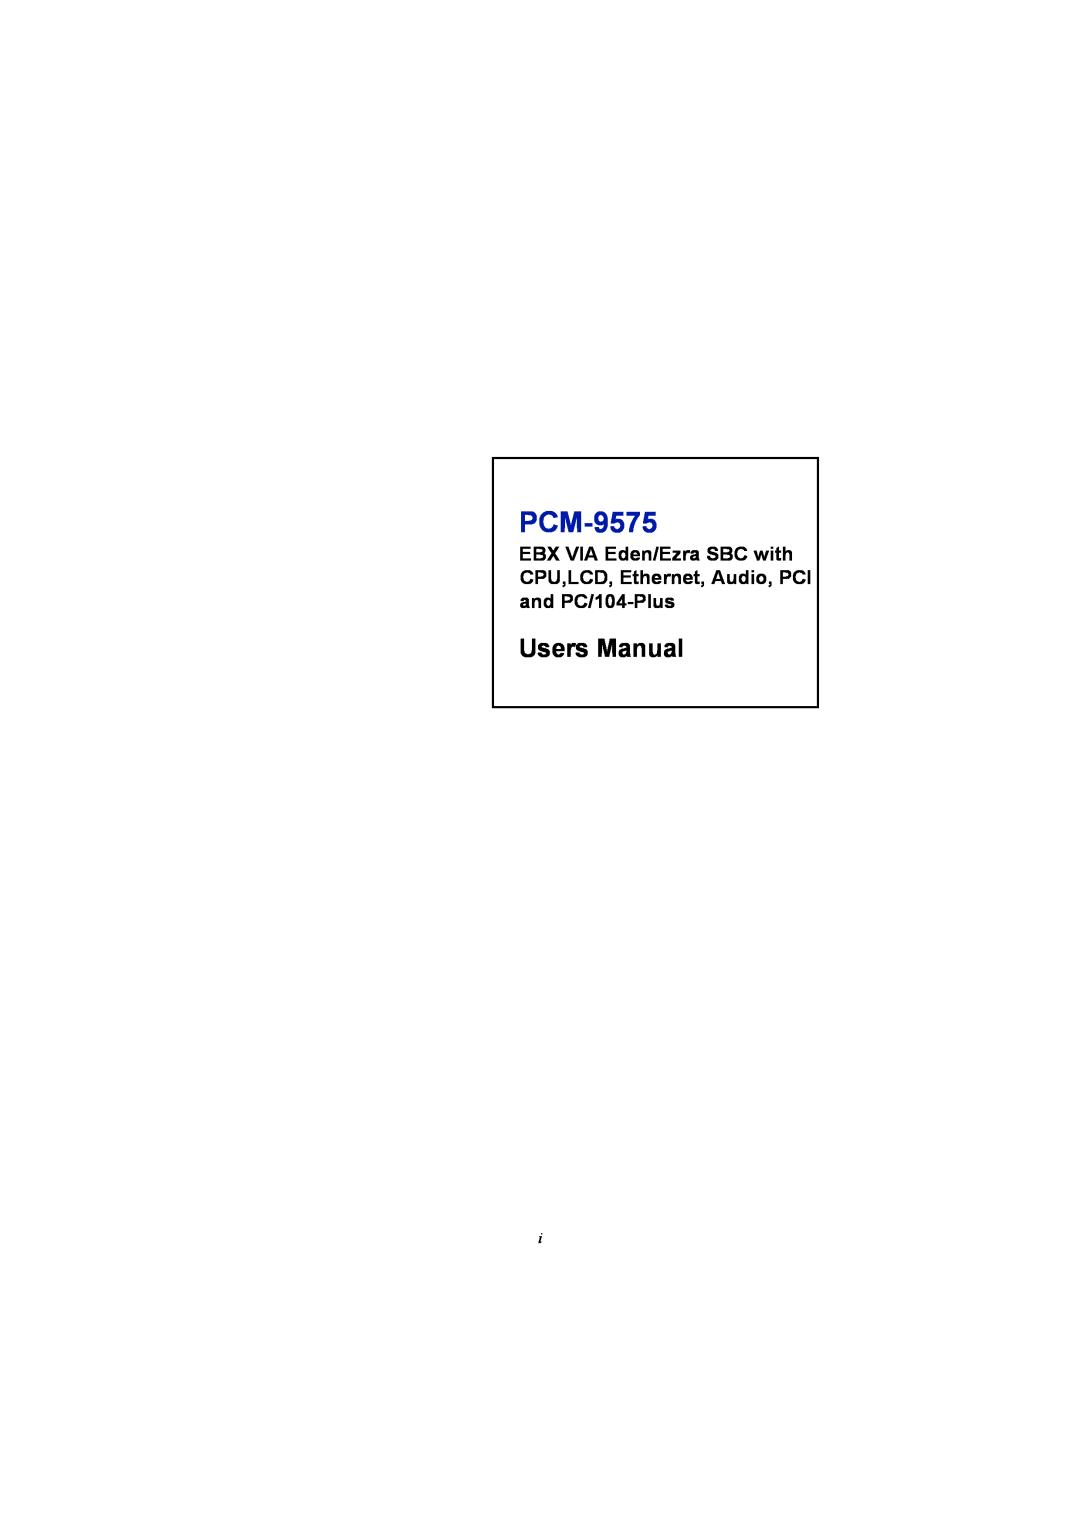 IBM 100/10 user manual PCM-9575 